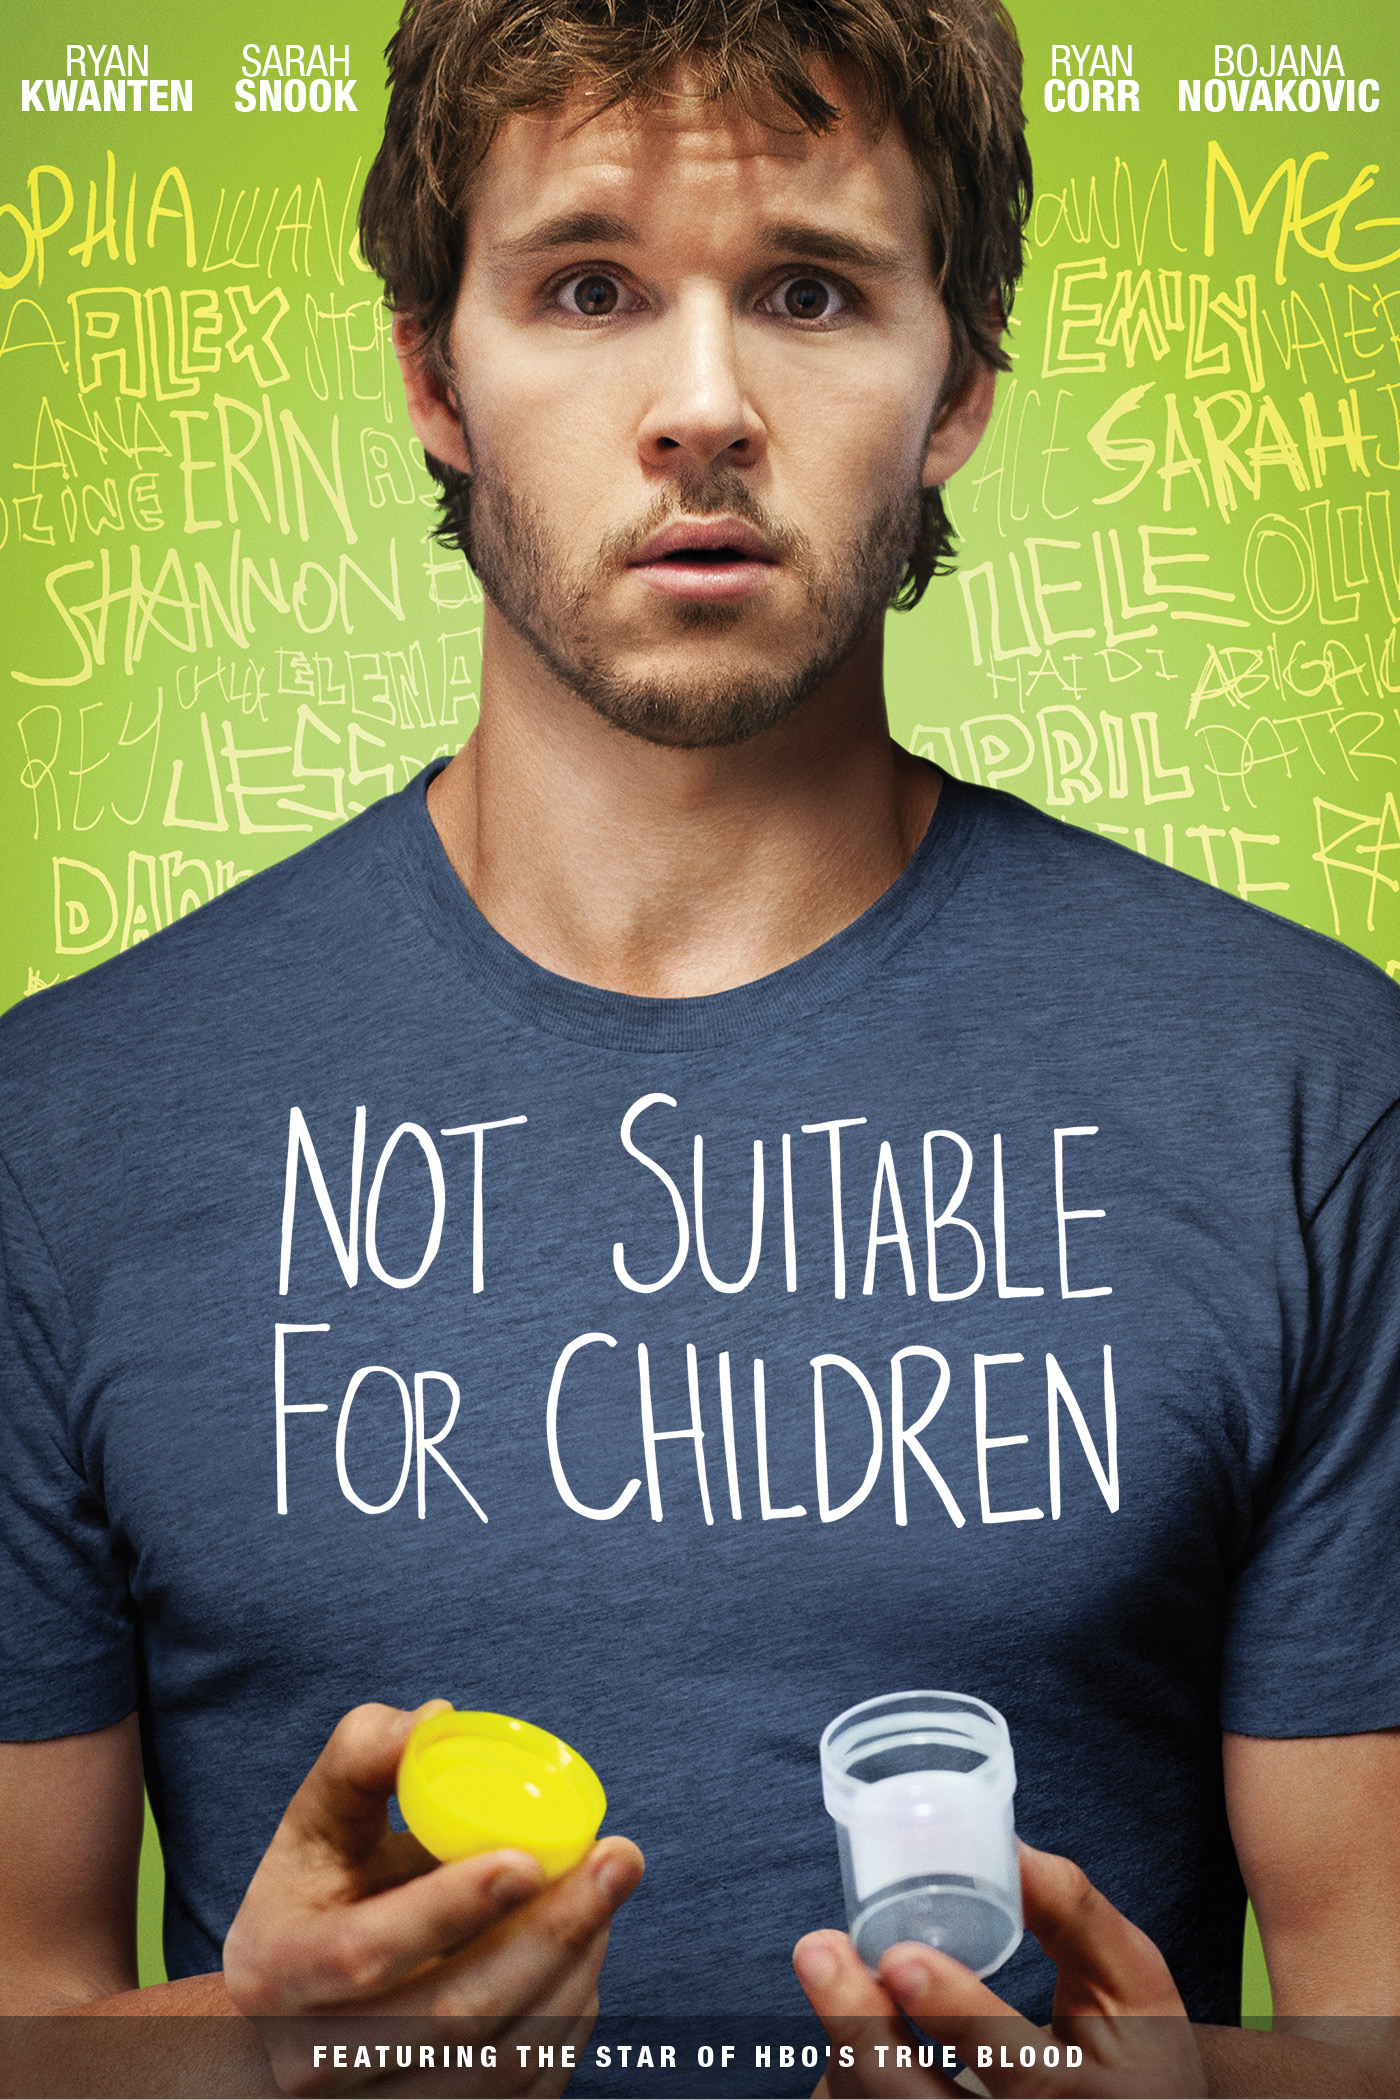 Ryan Kwanten in Not Suitable for Children (2012)